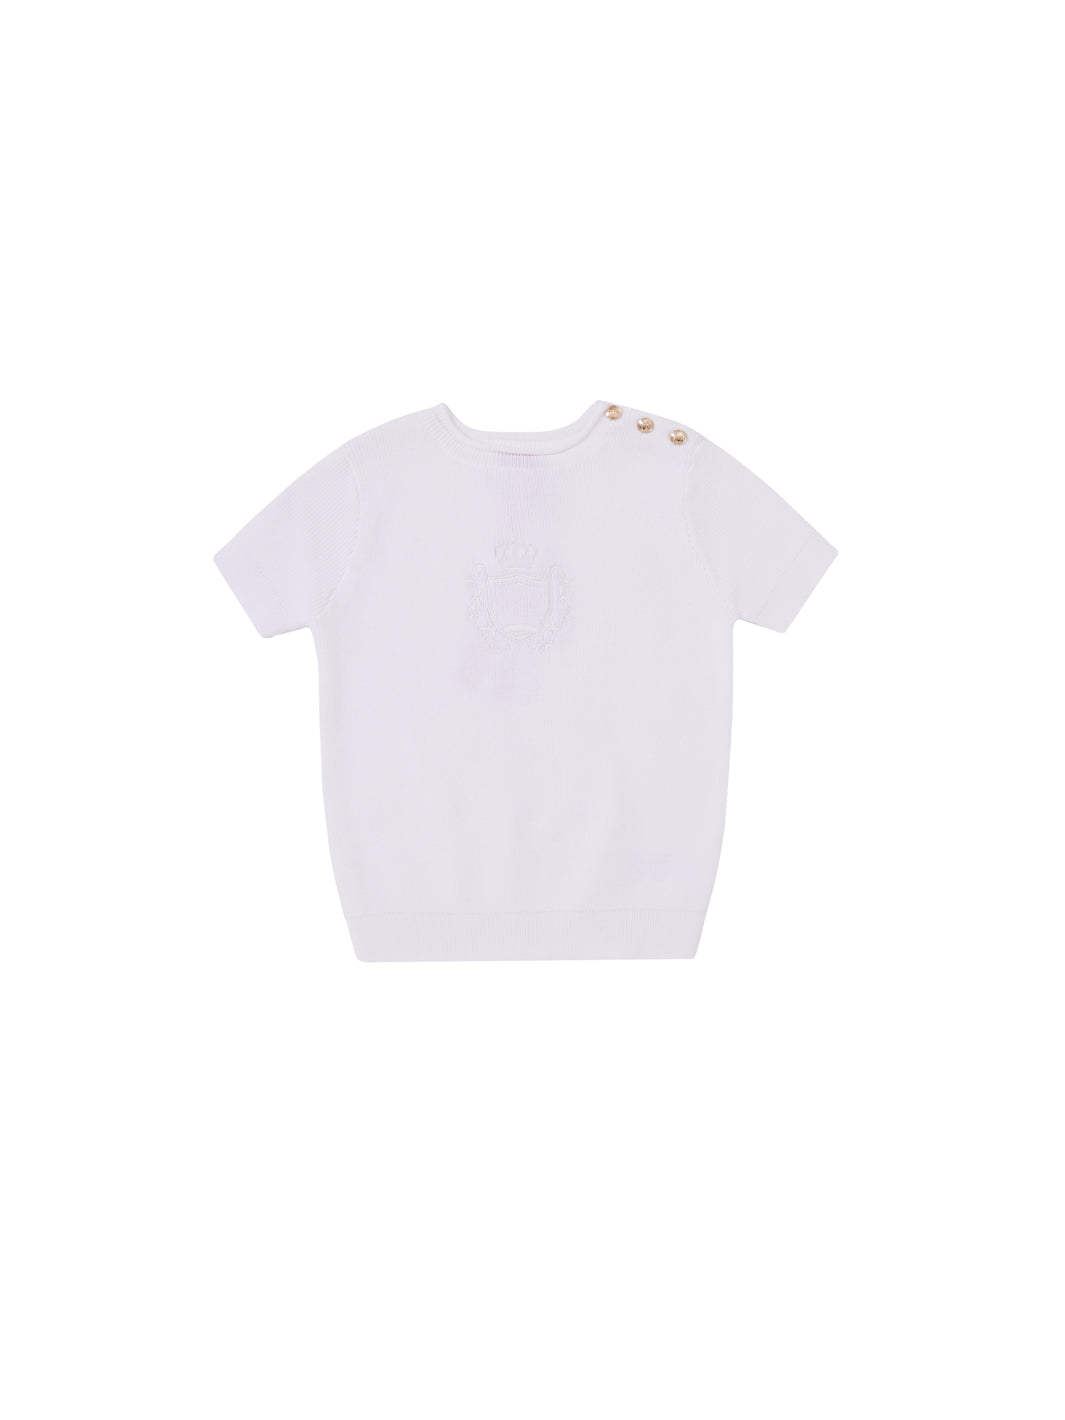 Emblem Short Sleeve Sweater - White